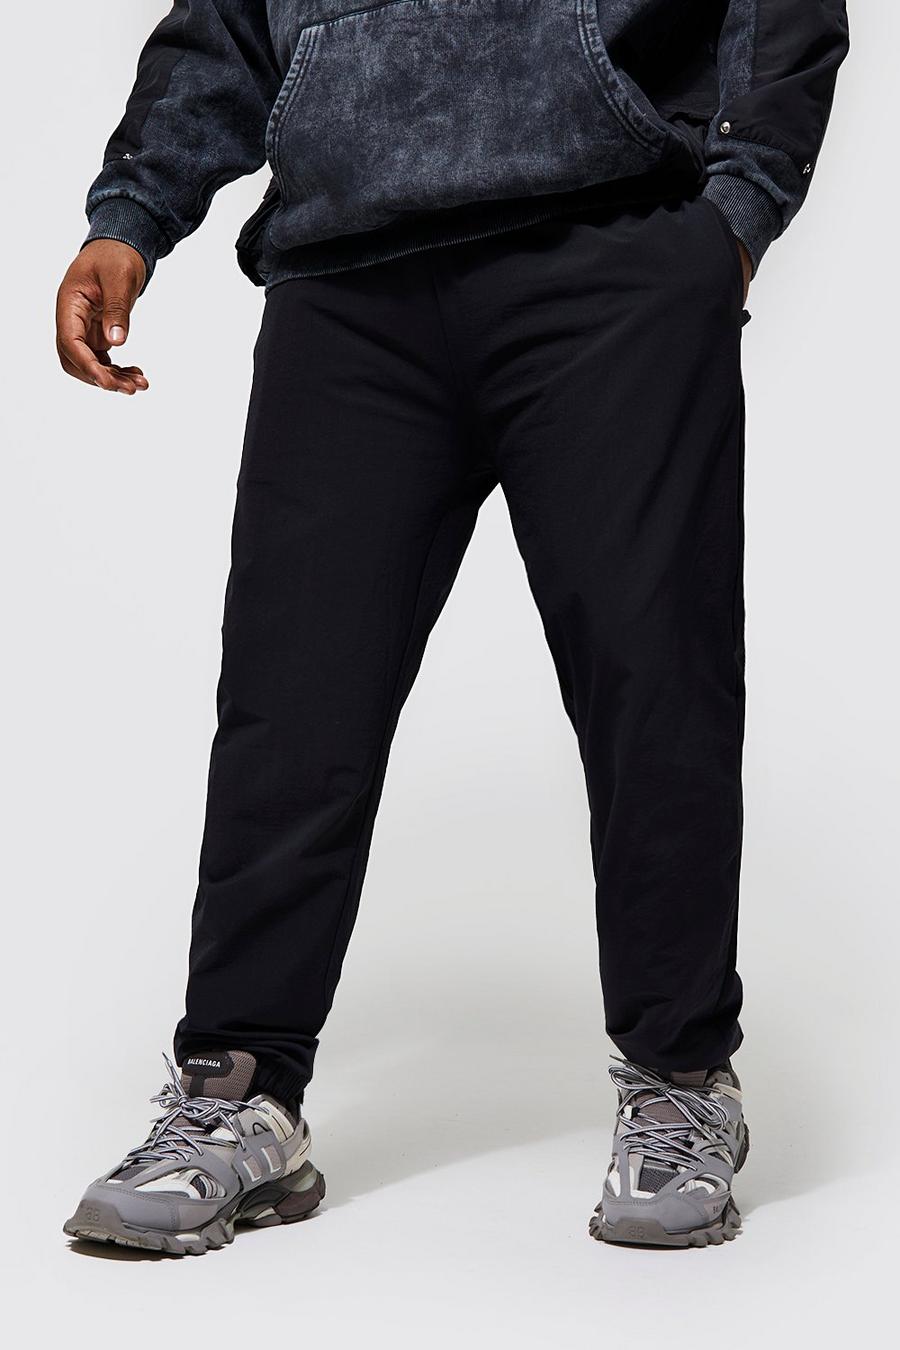 שחור negro מכנסיים עם שריכת פטנט בחפתים בגזרה צרה מידות גדולות